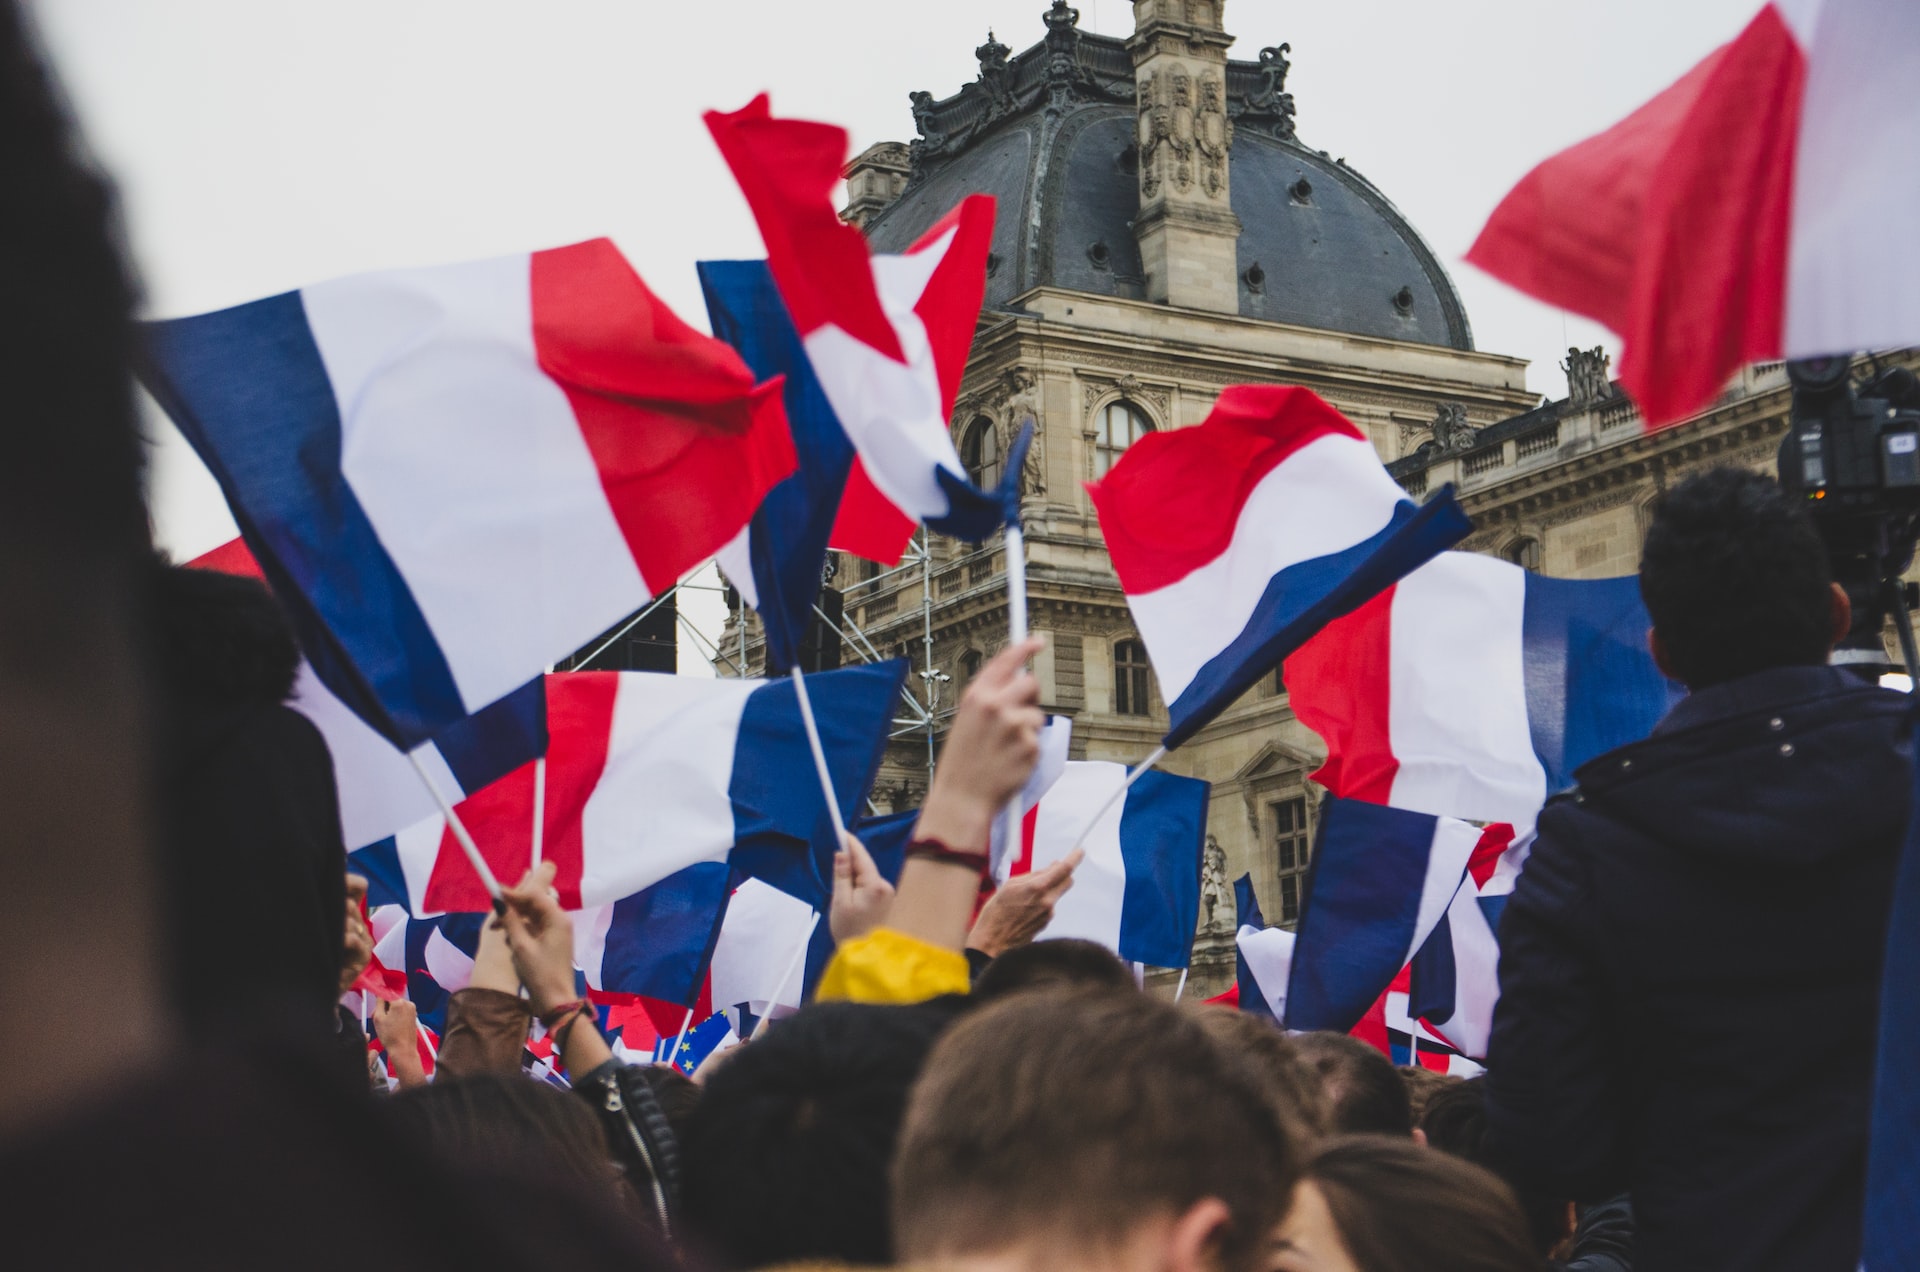 Пенсионный возраст во Франции хотят повысить на два года, объявлена забастовка